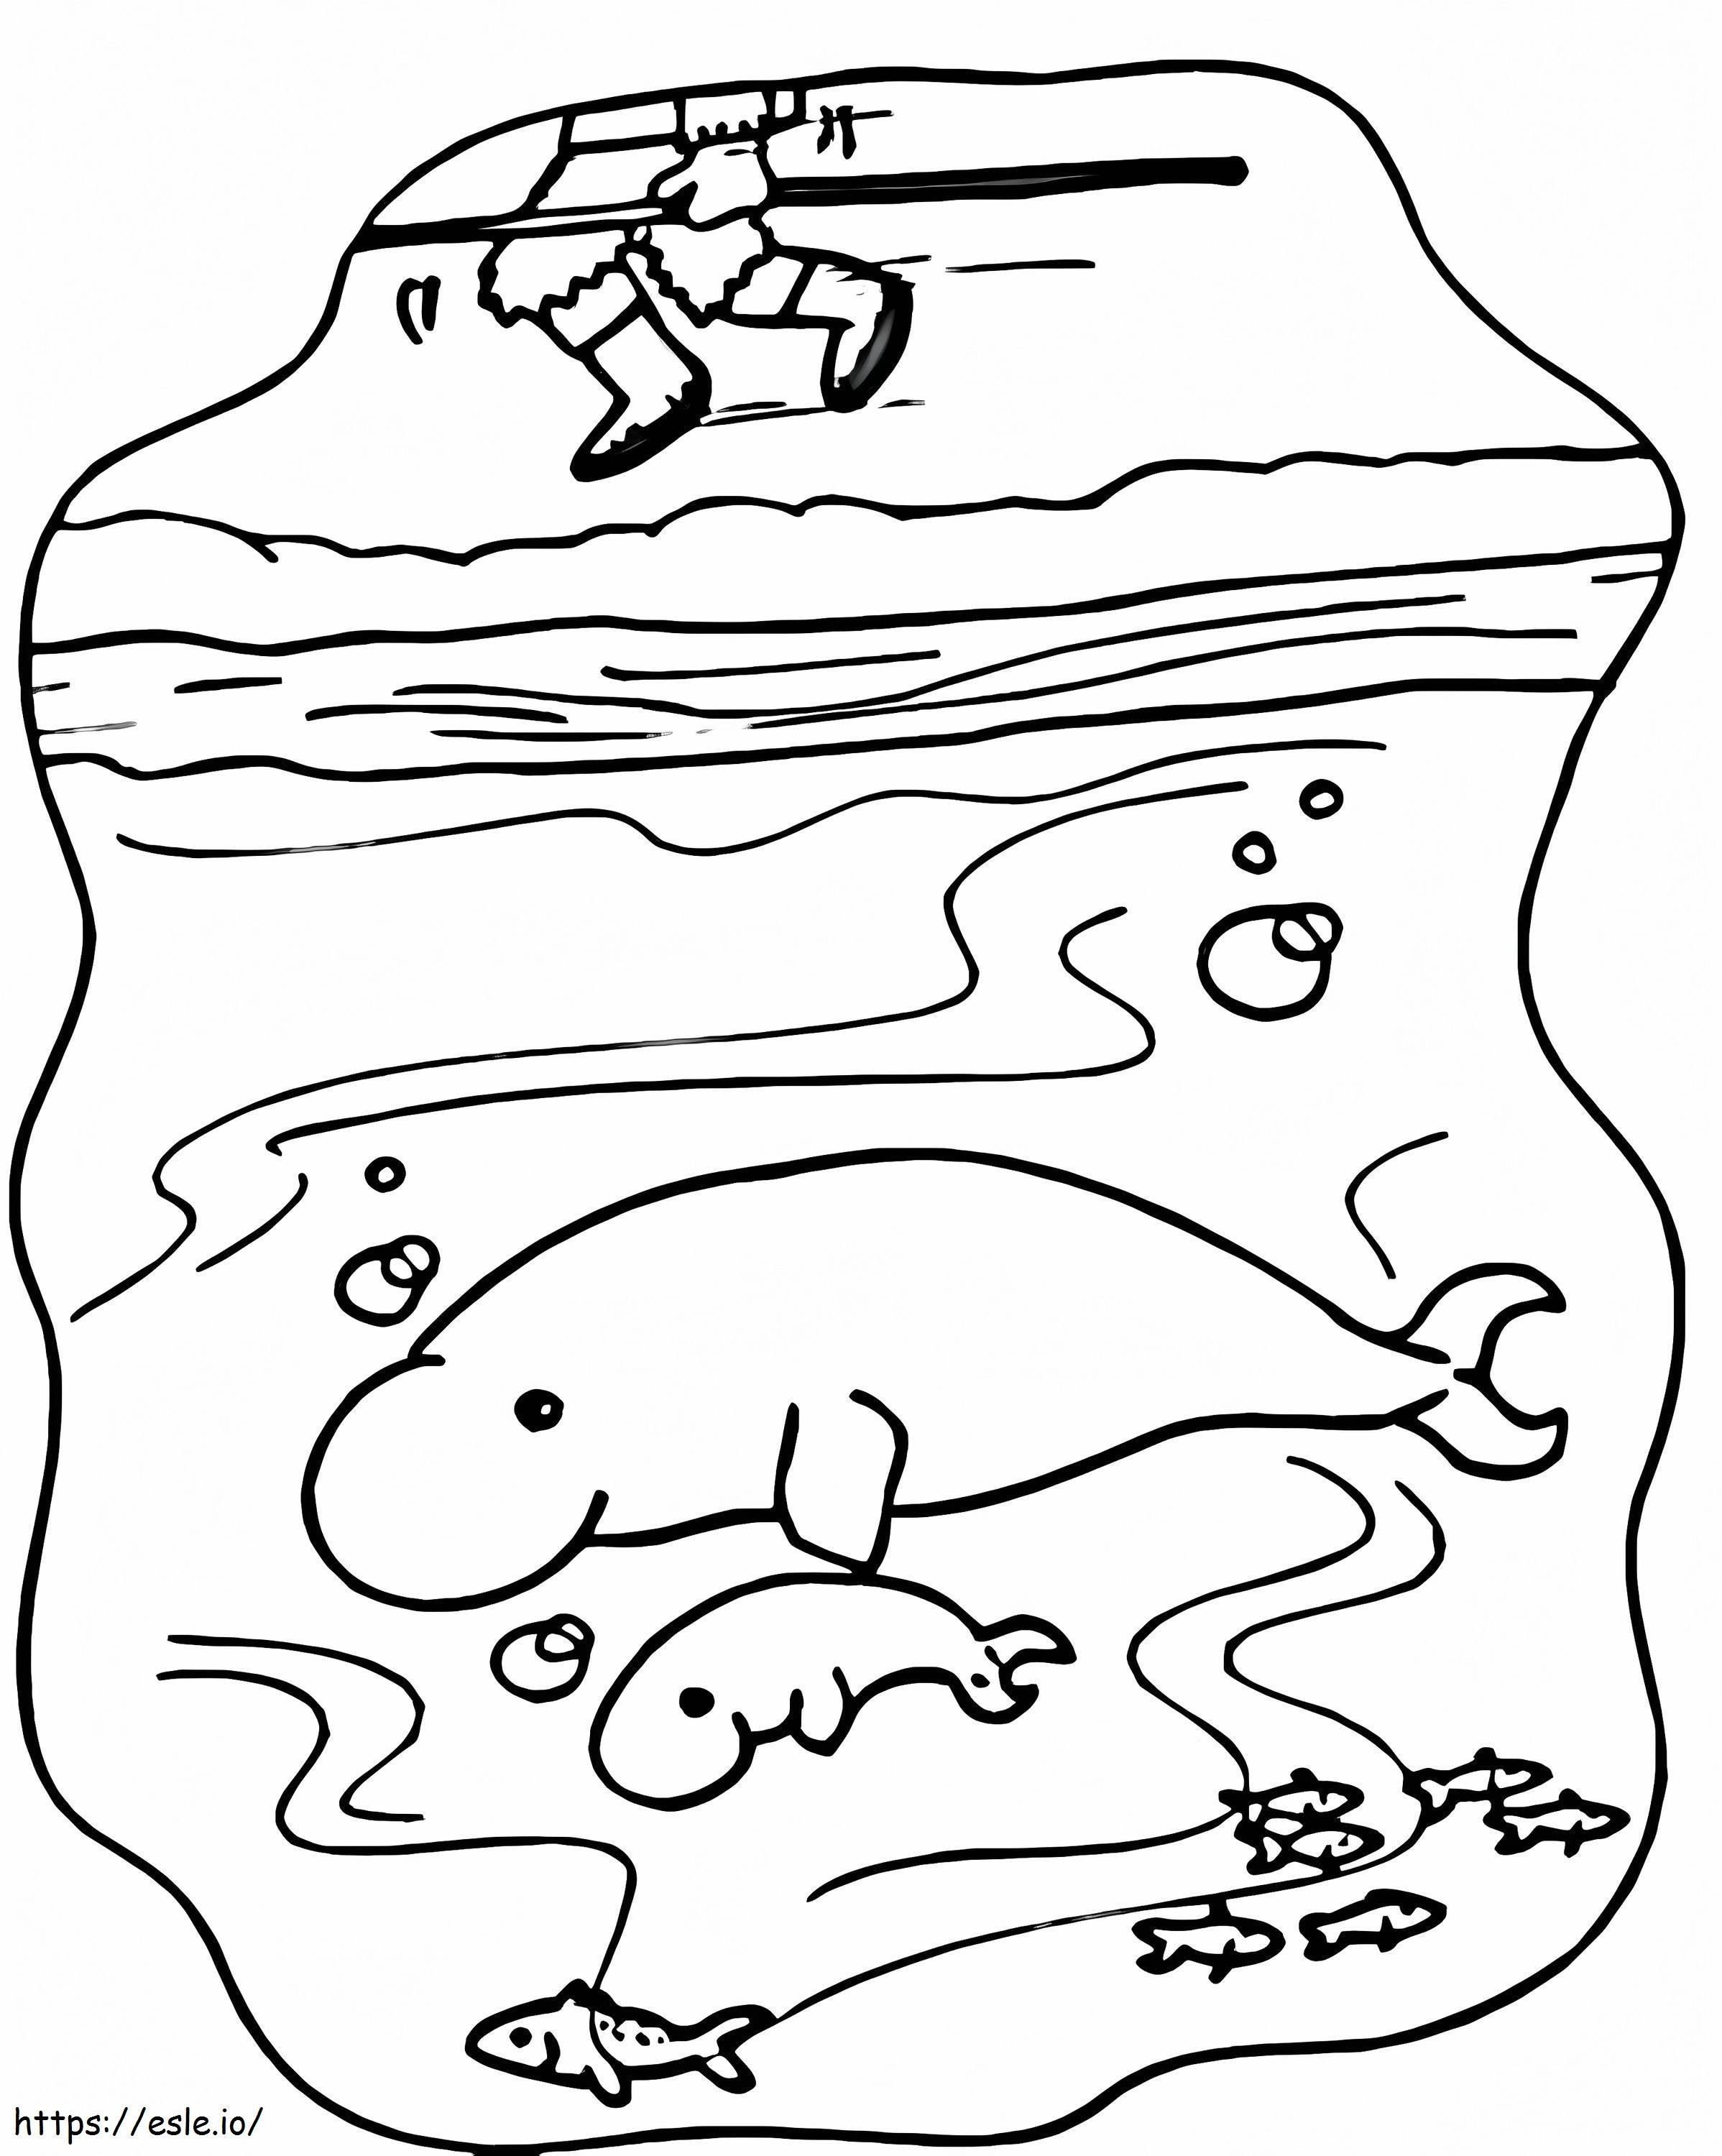 Coloriage Mère et bébé lamantin nageant à imprimer dessin